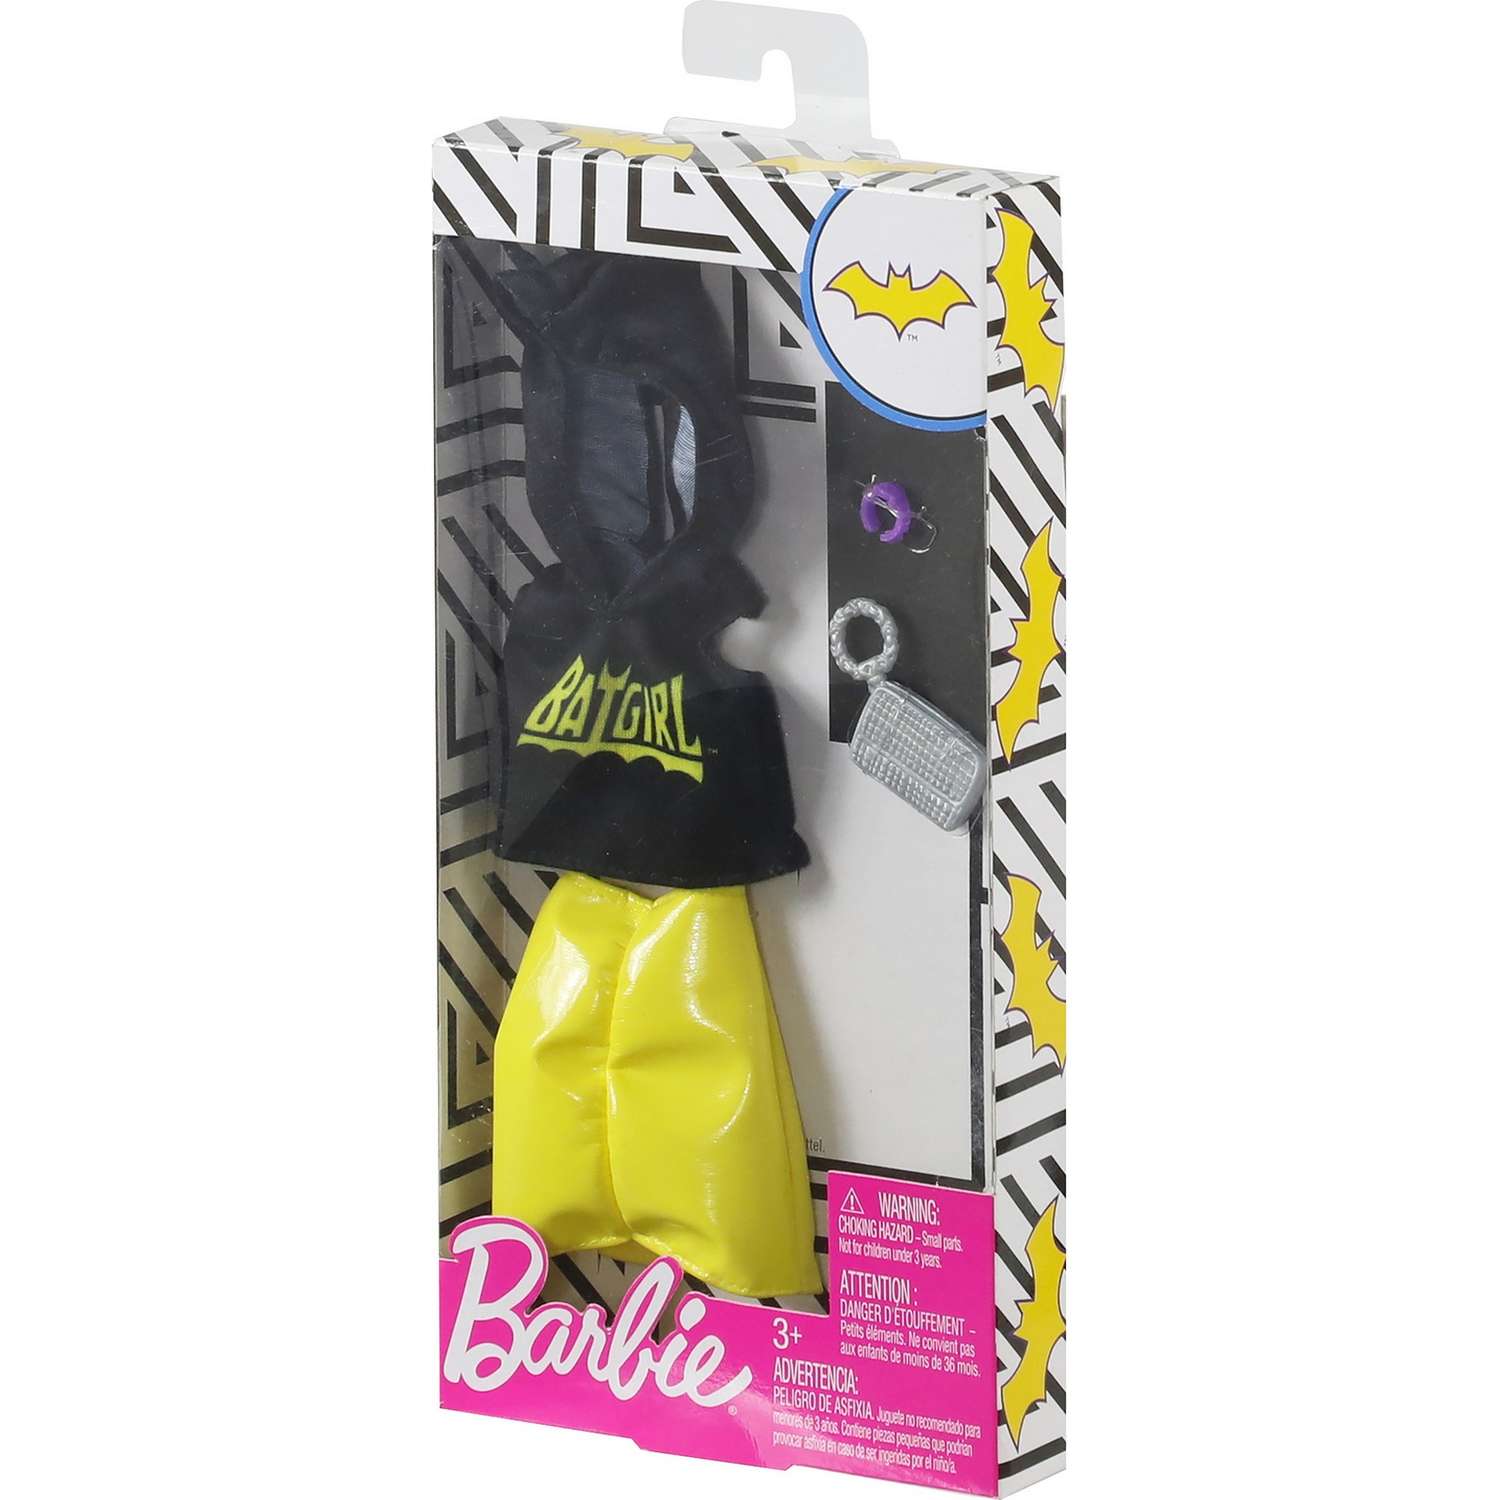 Одежда Barbie Универсальный полный наряд коллаборации Бэтгёрл Топ с капюшоном и желтая юбка FXK74 FKR66 - фото 3